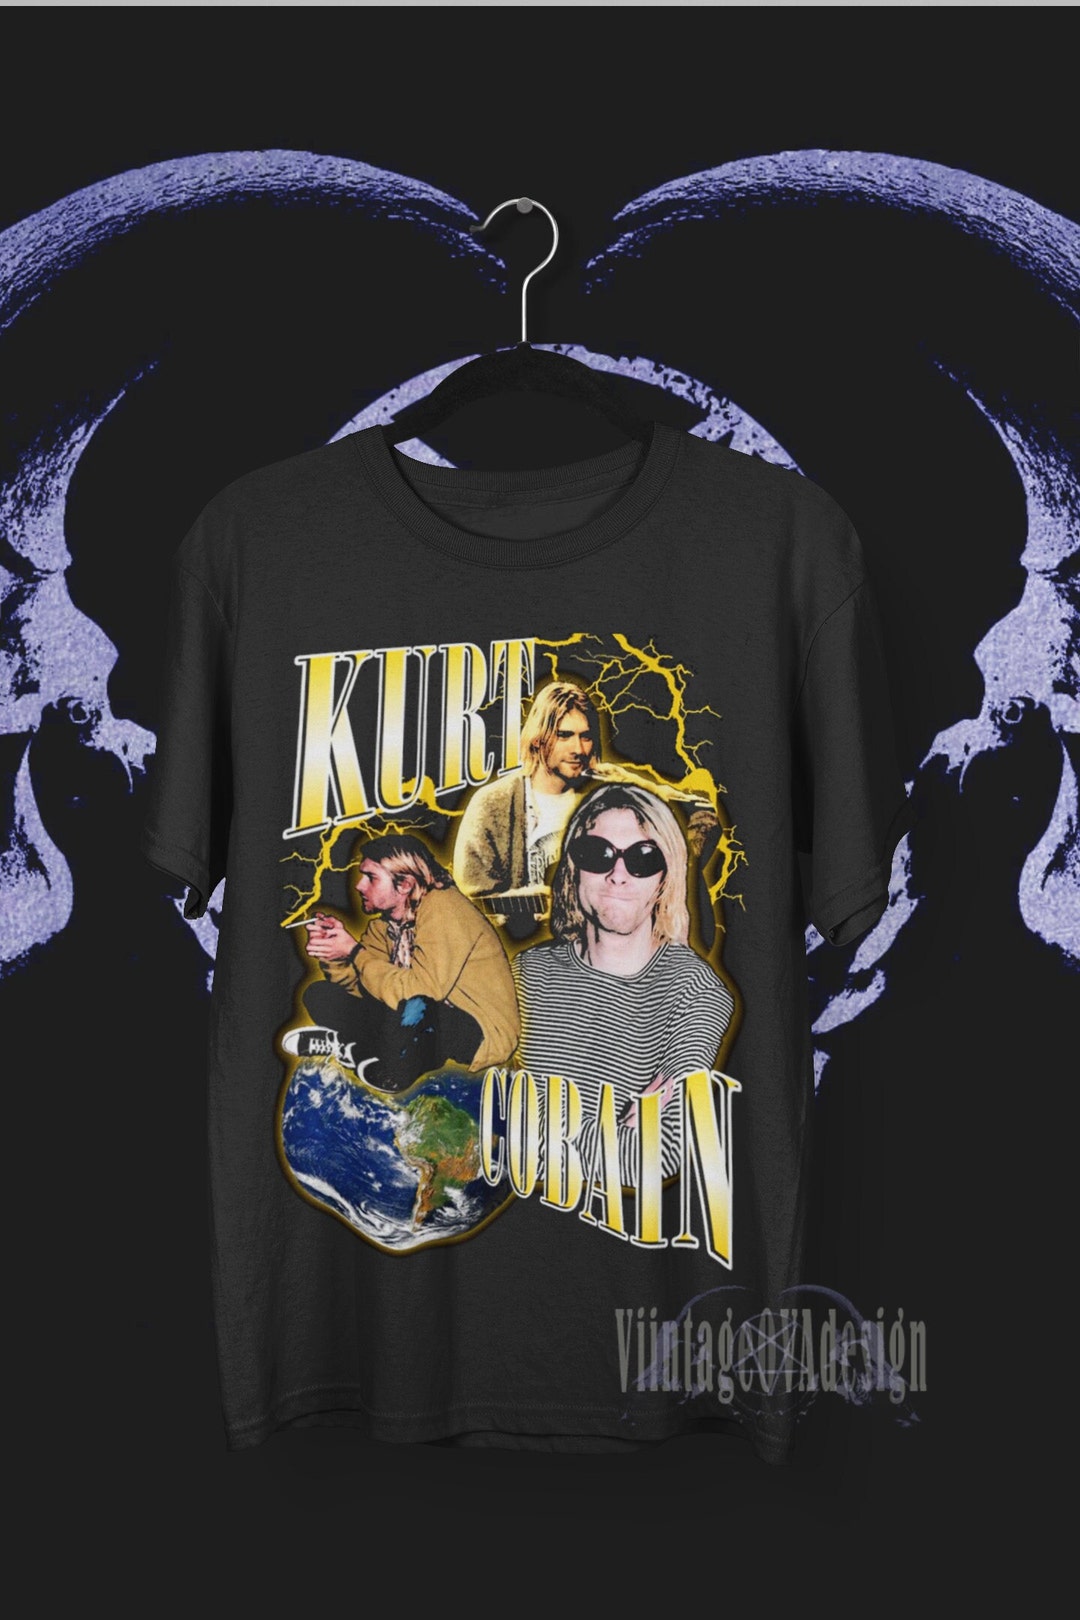 Kurt Cobain Tshirt Kurt Cobain Inspired Tee Shirt Vintage - Etsy